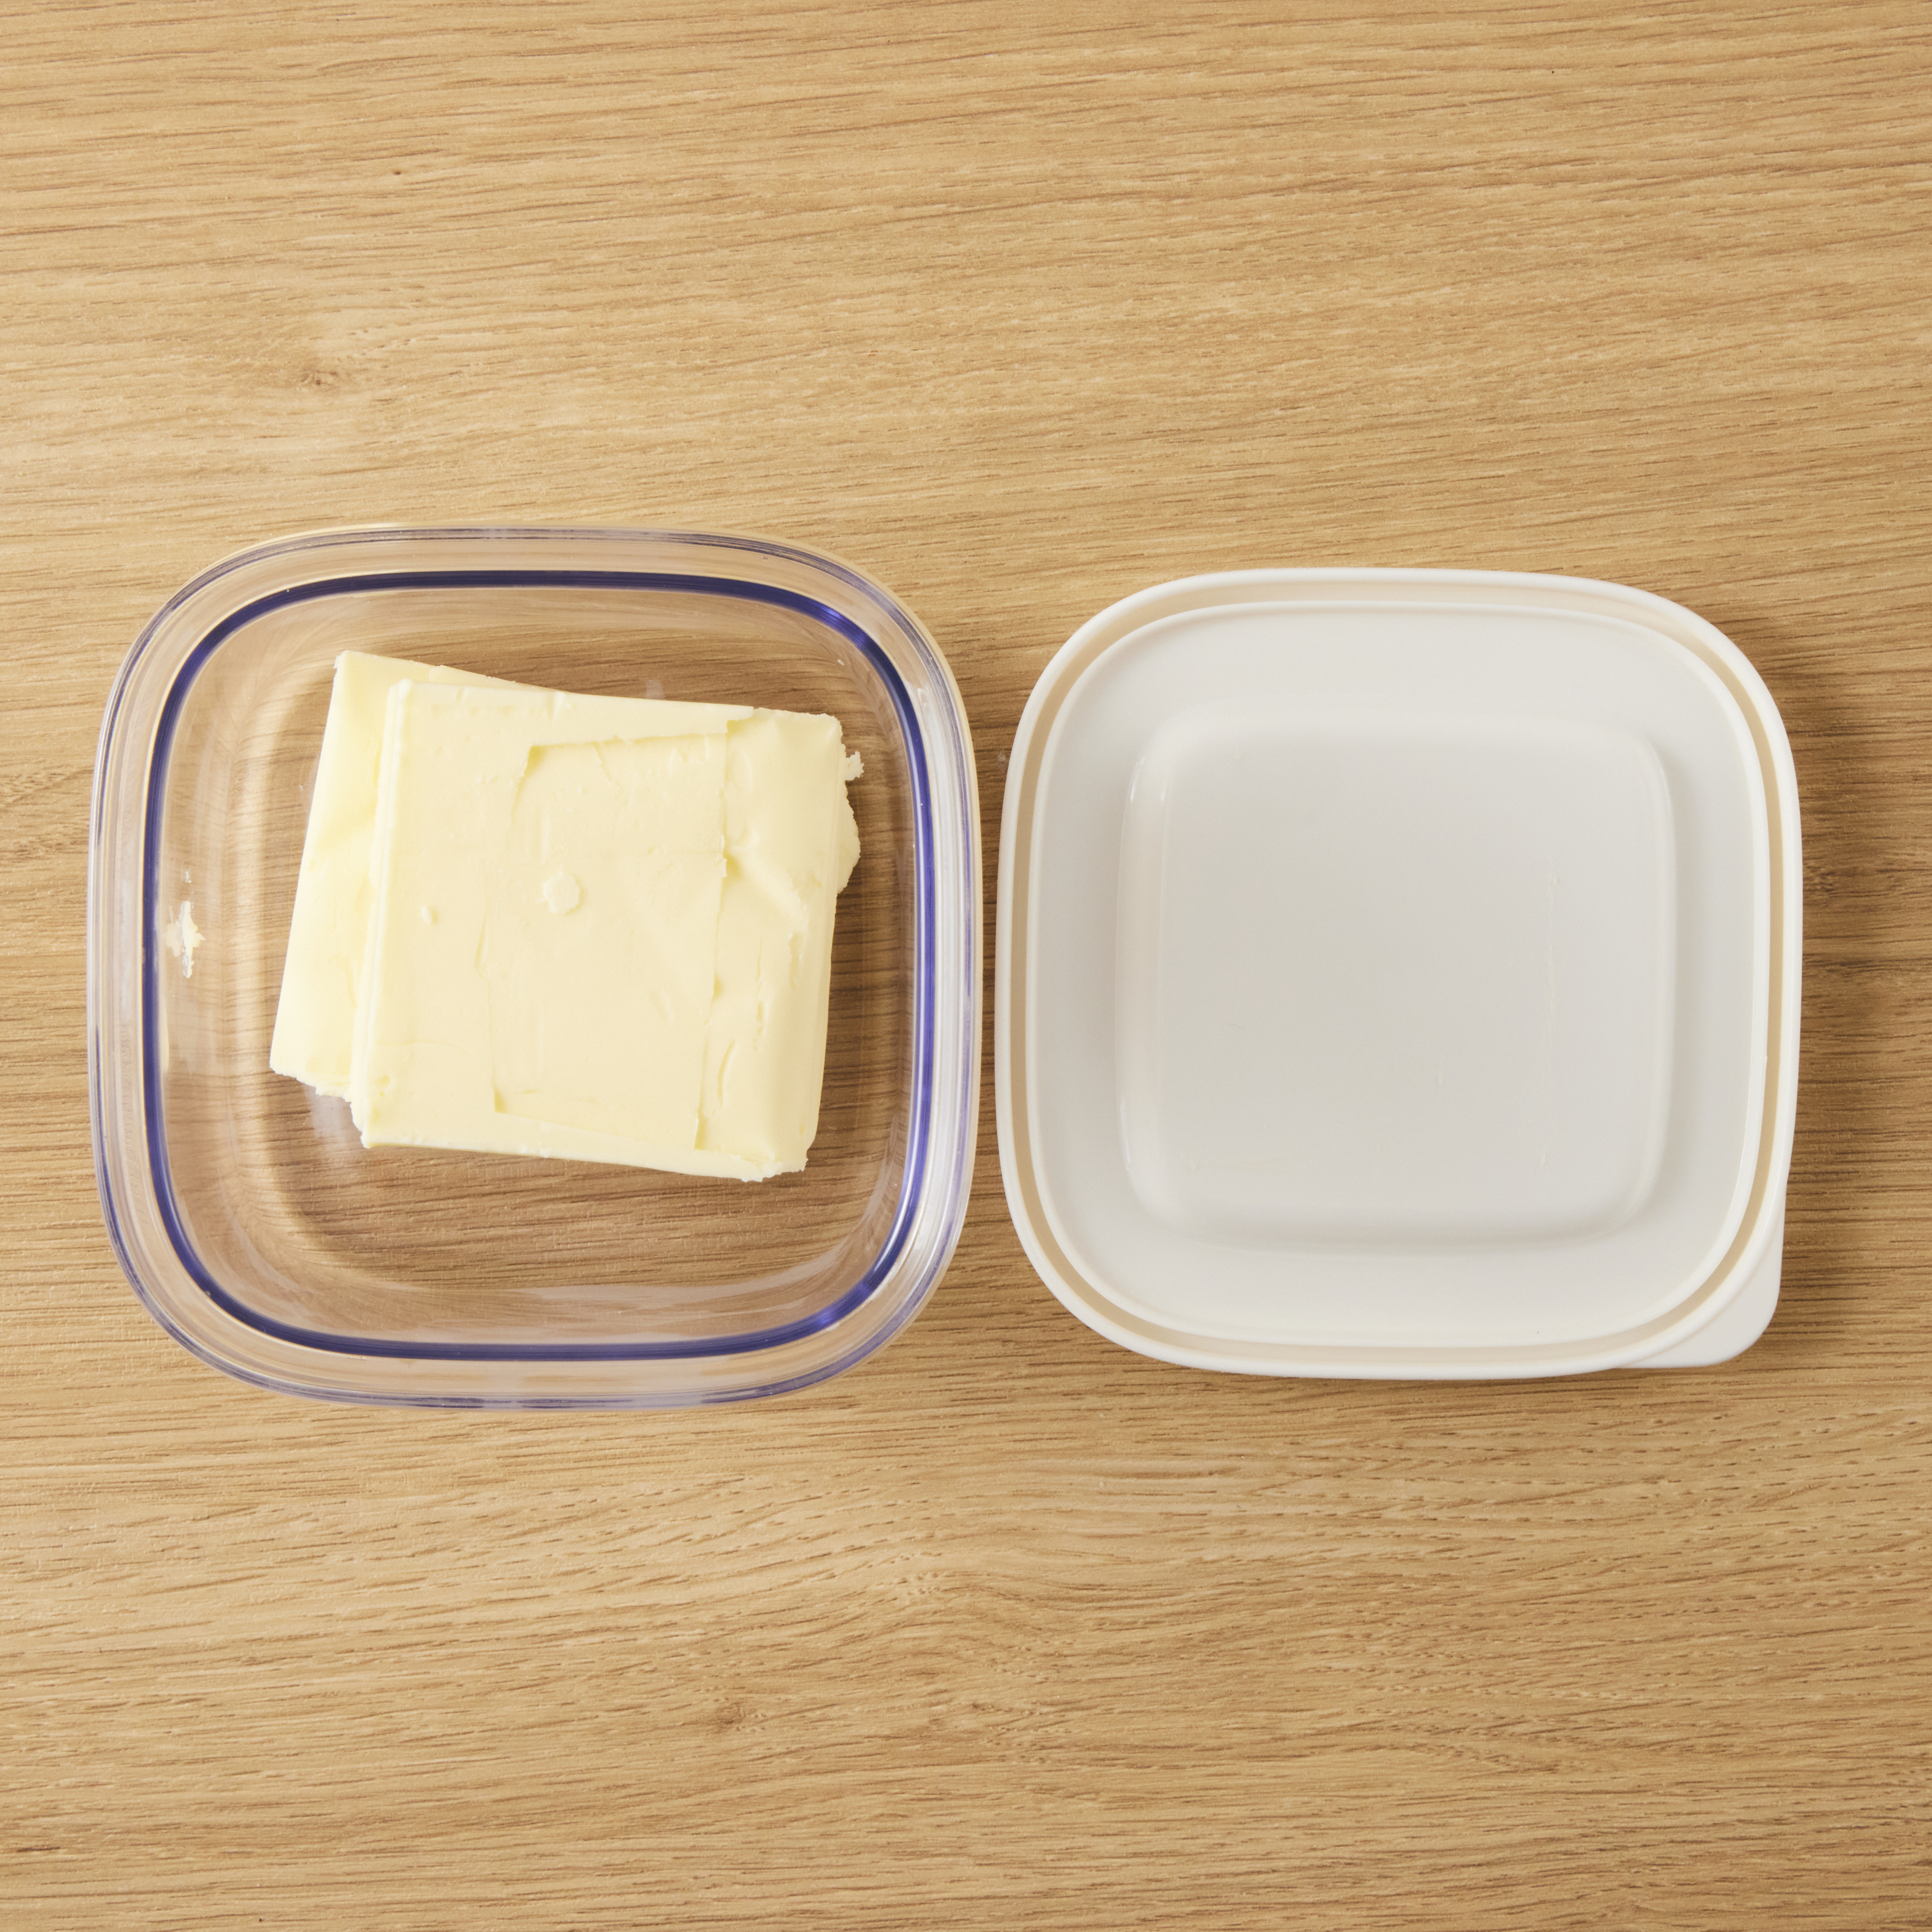 バター皿 バター食器箱コンテナチーズサーバー収納キーパートレイふたのチーズの収納トレイバターの皿コンテナー箱のフードボックス バター料理